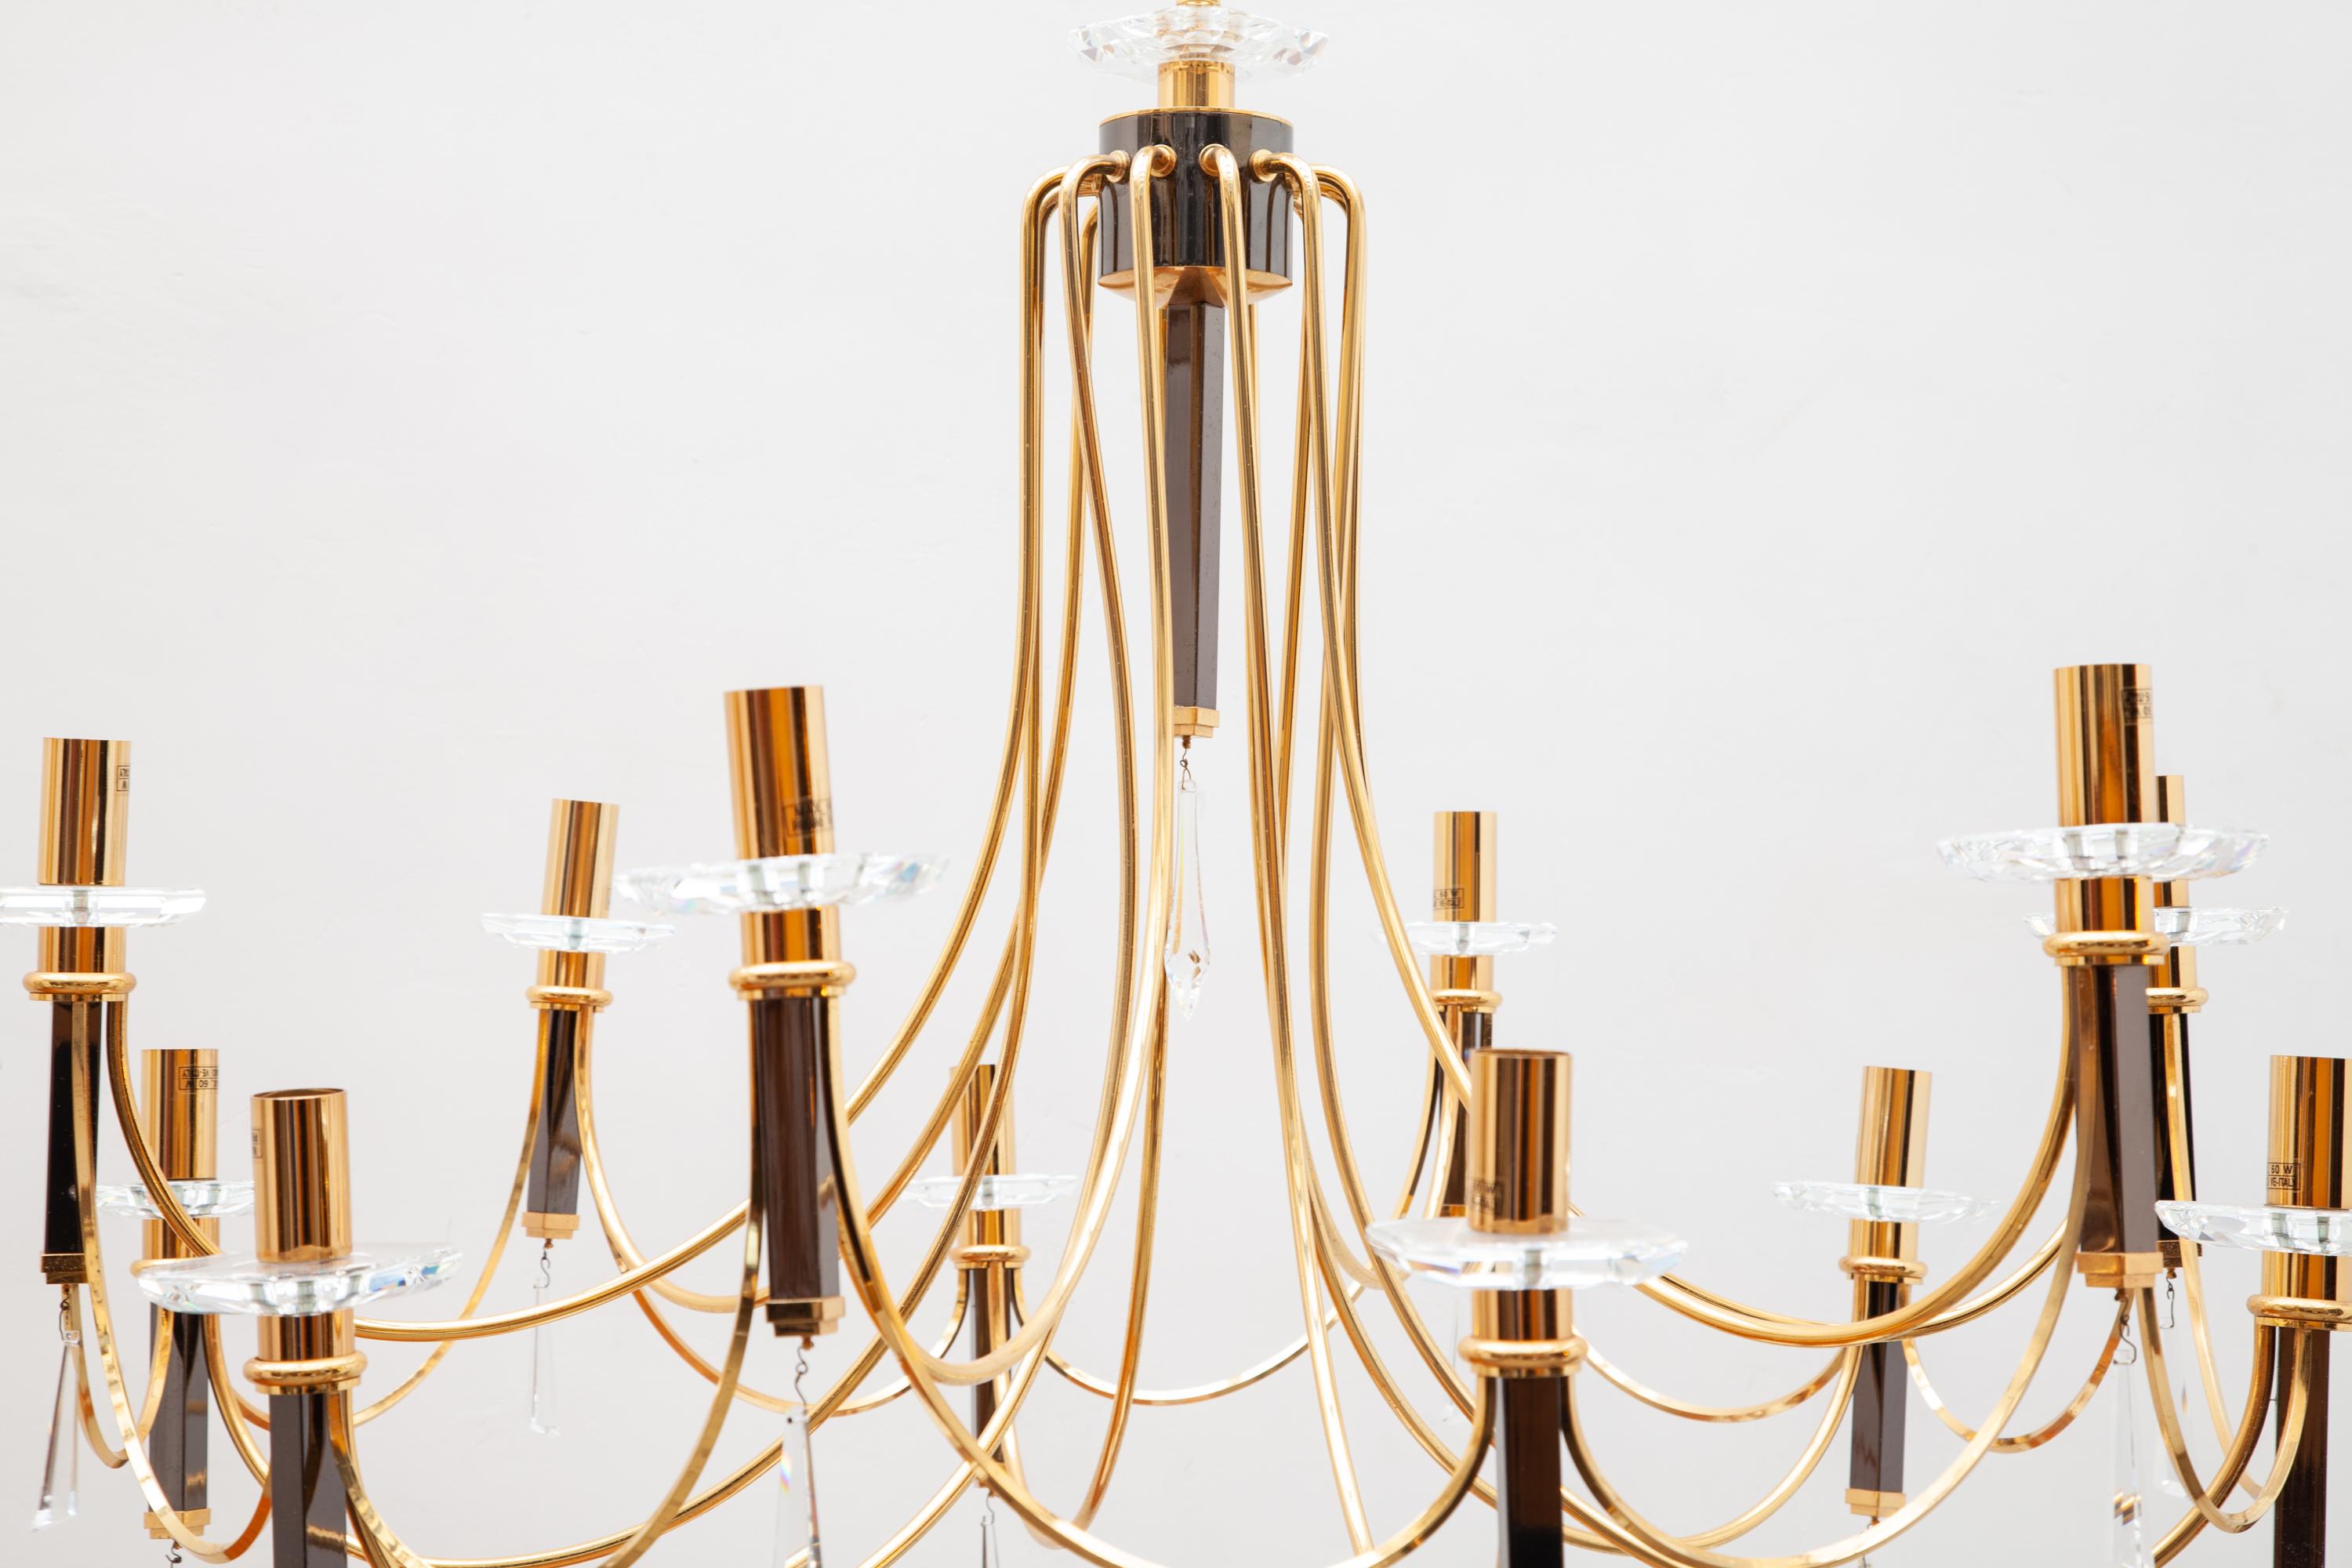 Kronleuchter vom italienischen Hersteller Prearo eine Schöpfung eines feinen Kunstwerkes eines klassischen Modells verfügt über stilvolle facettierte Kristallglas Akzente und 12 Glühbirnen mit Sockel E14.
Materialien - vermessingter Stahl,